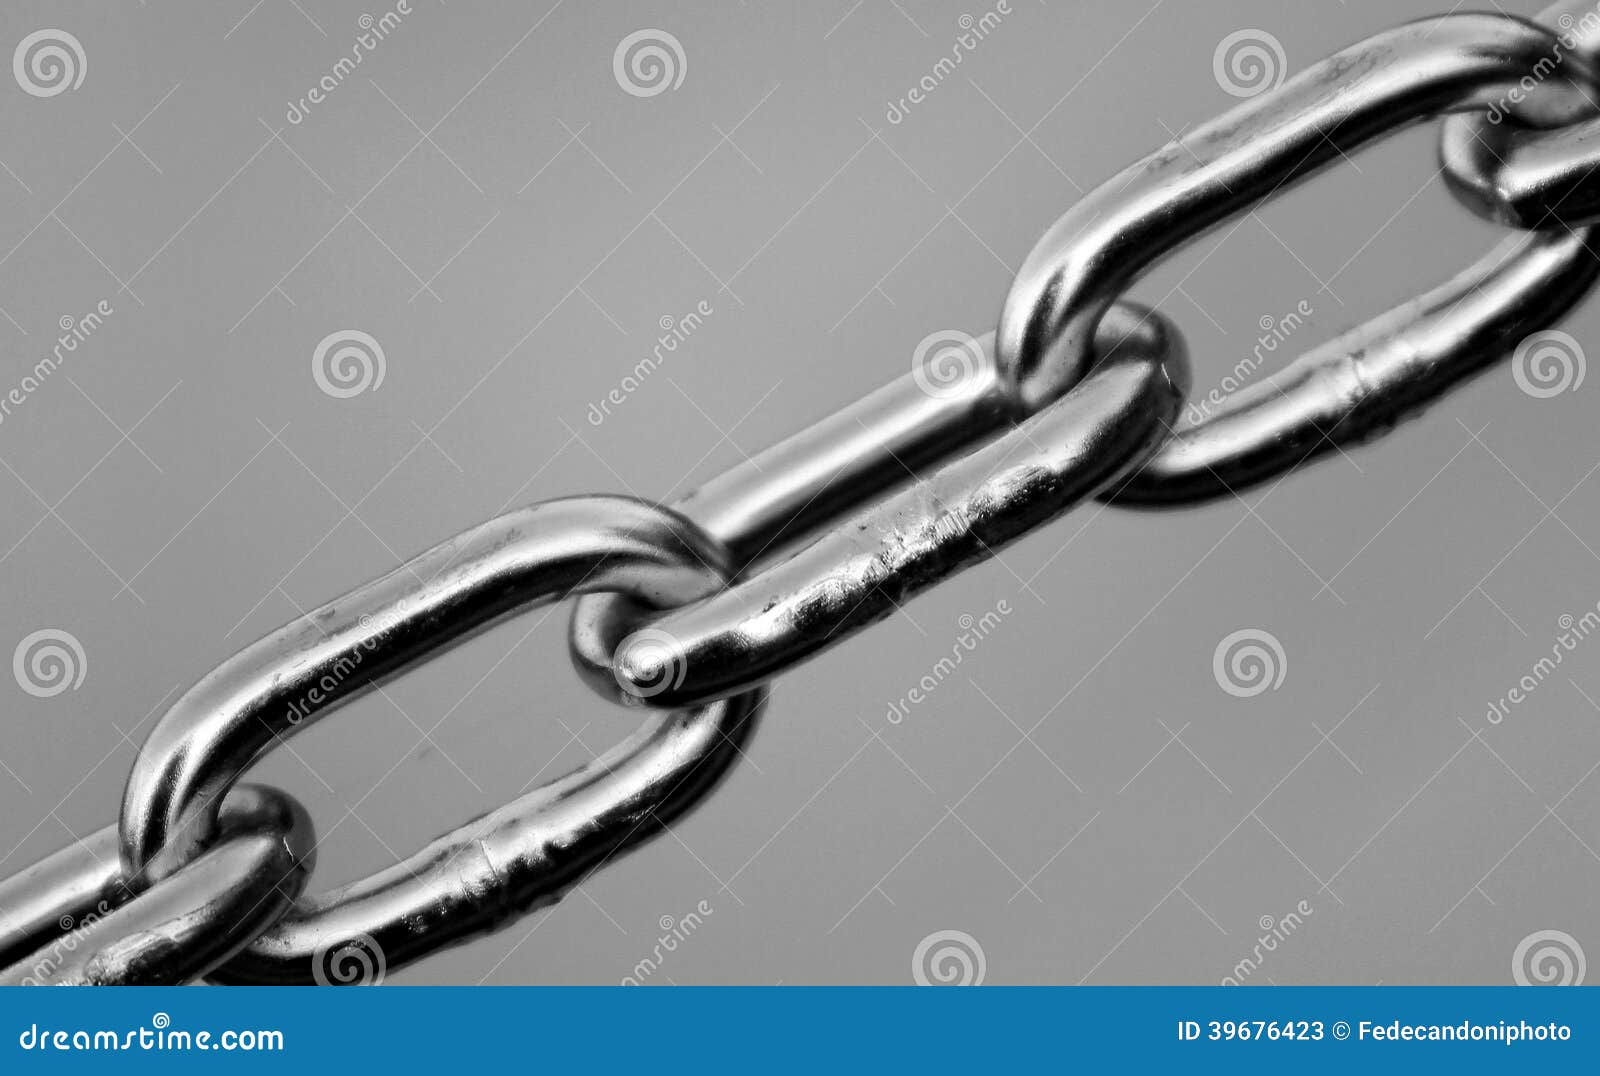 chain  of tenacity